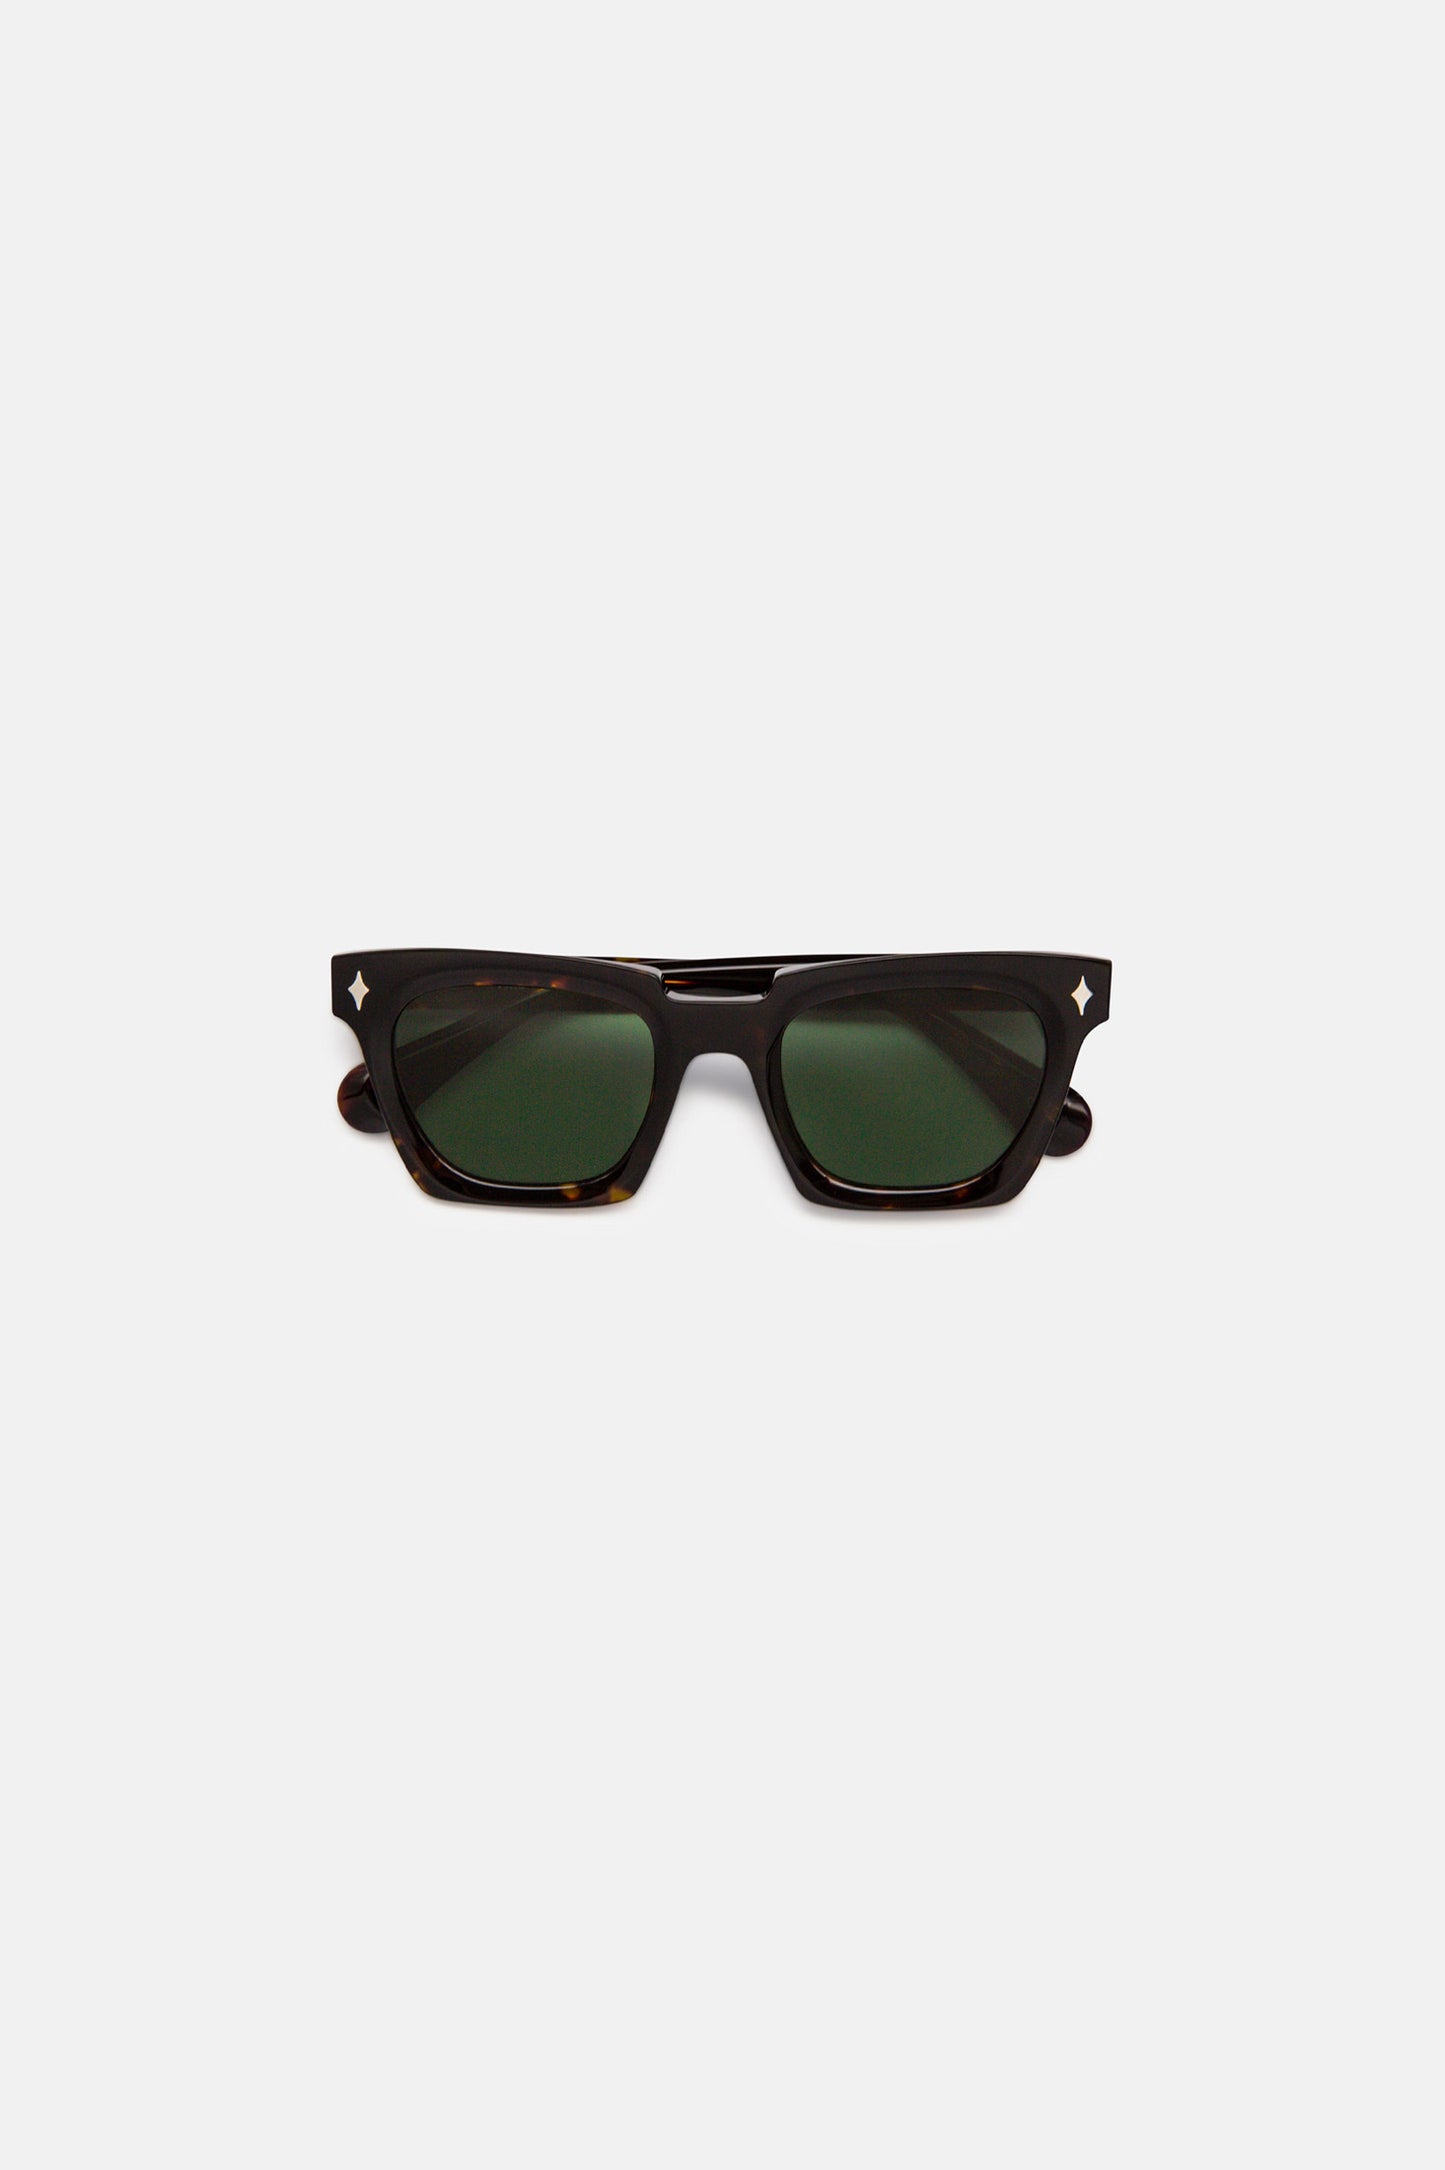 Brutal Sunglasses Tortoiseshell w/ Polarised Green Lens